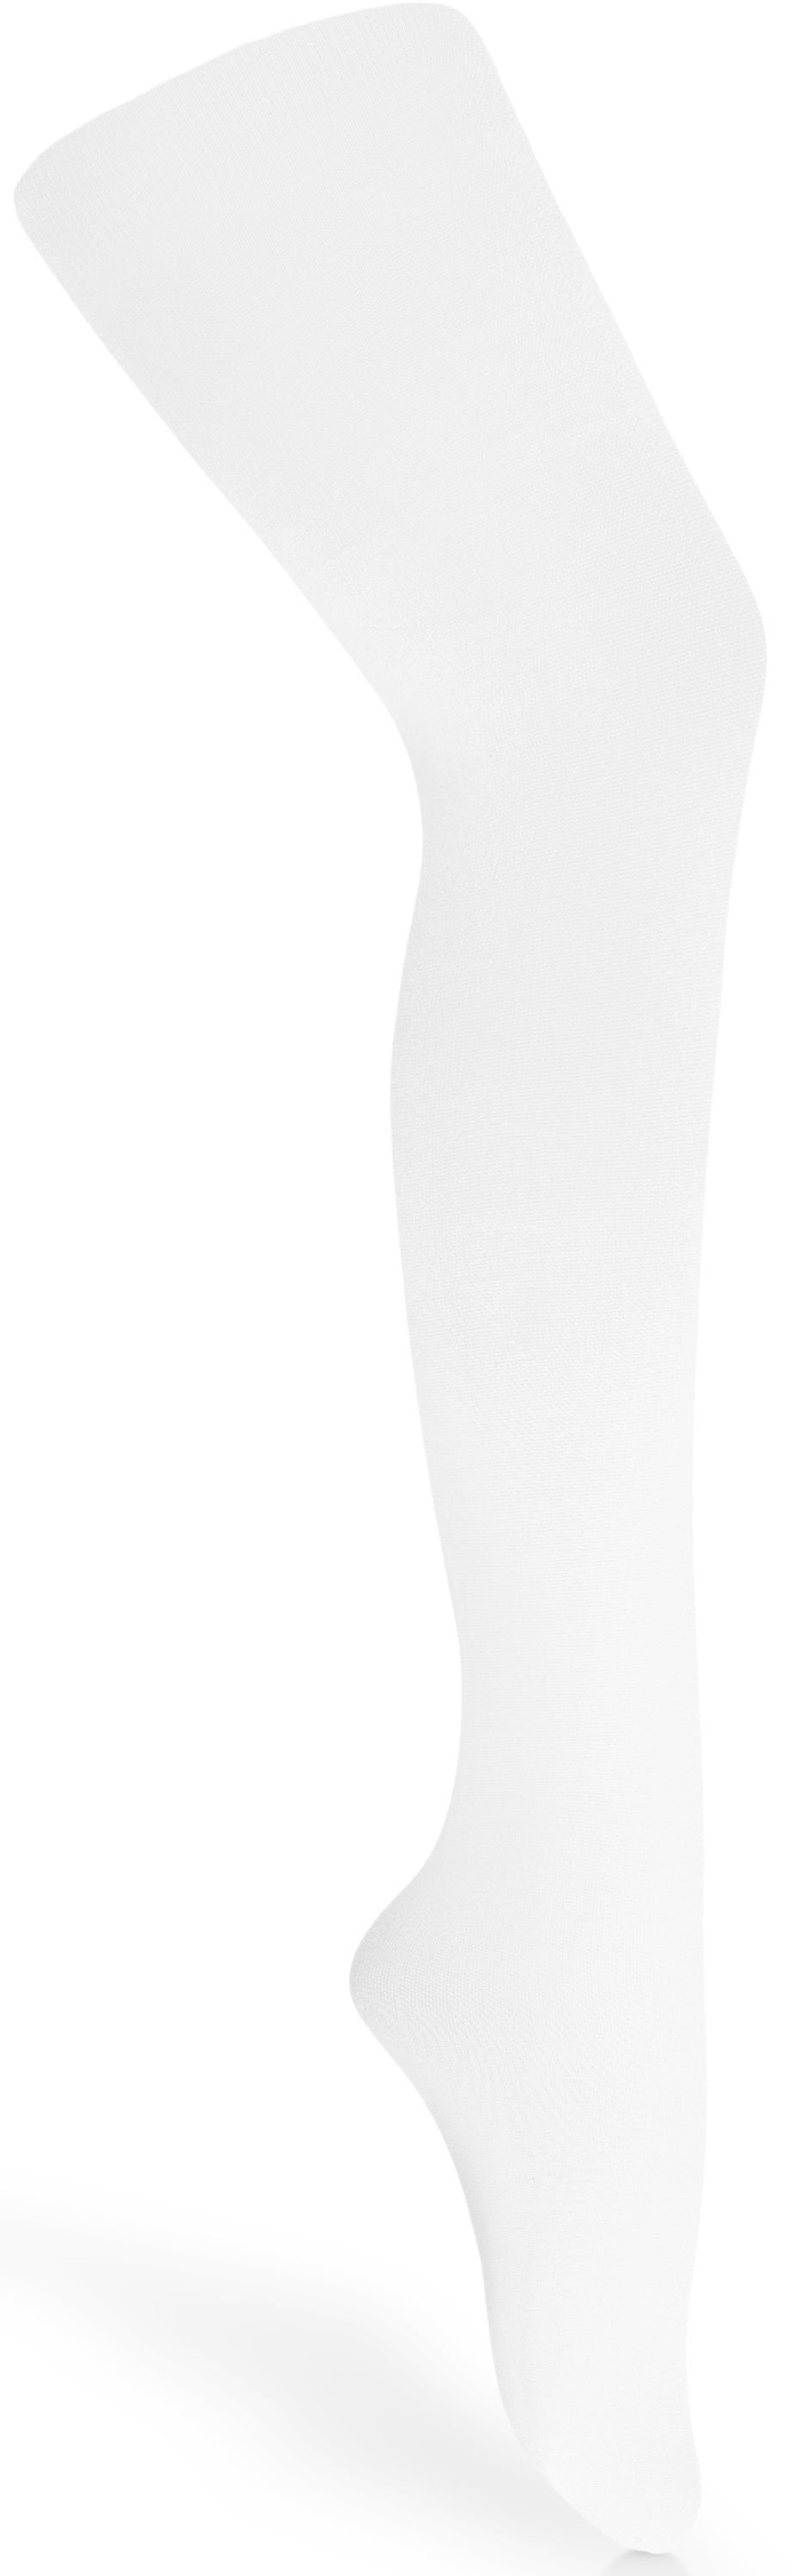 Merry Style Strumpfhose Kinder Strumpfhose für Mädchen Microfaser 60 DEN 60 DEN (1 St) Weiß